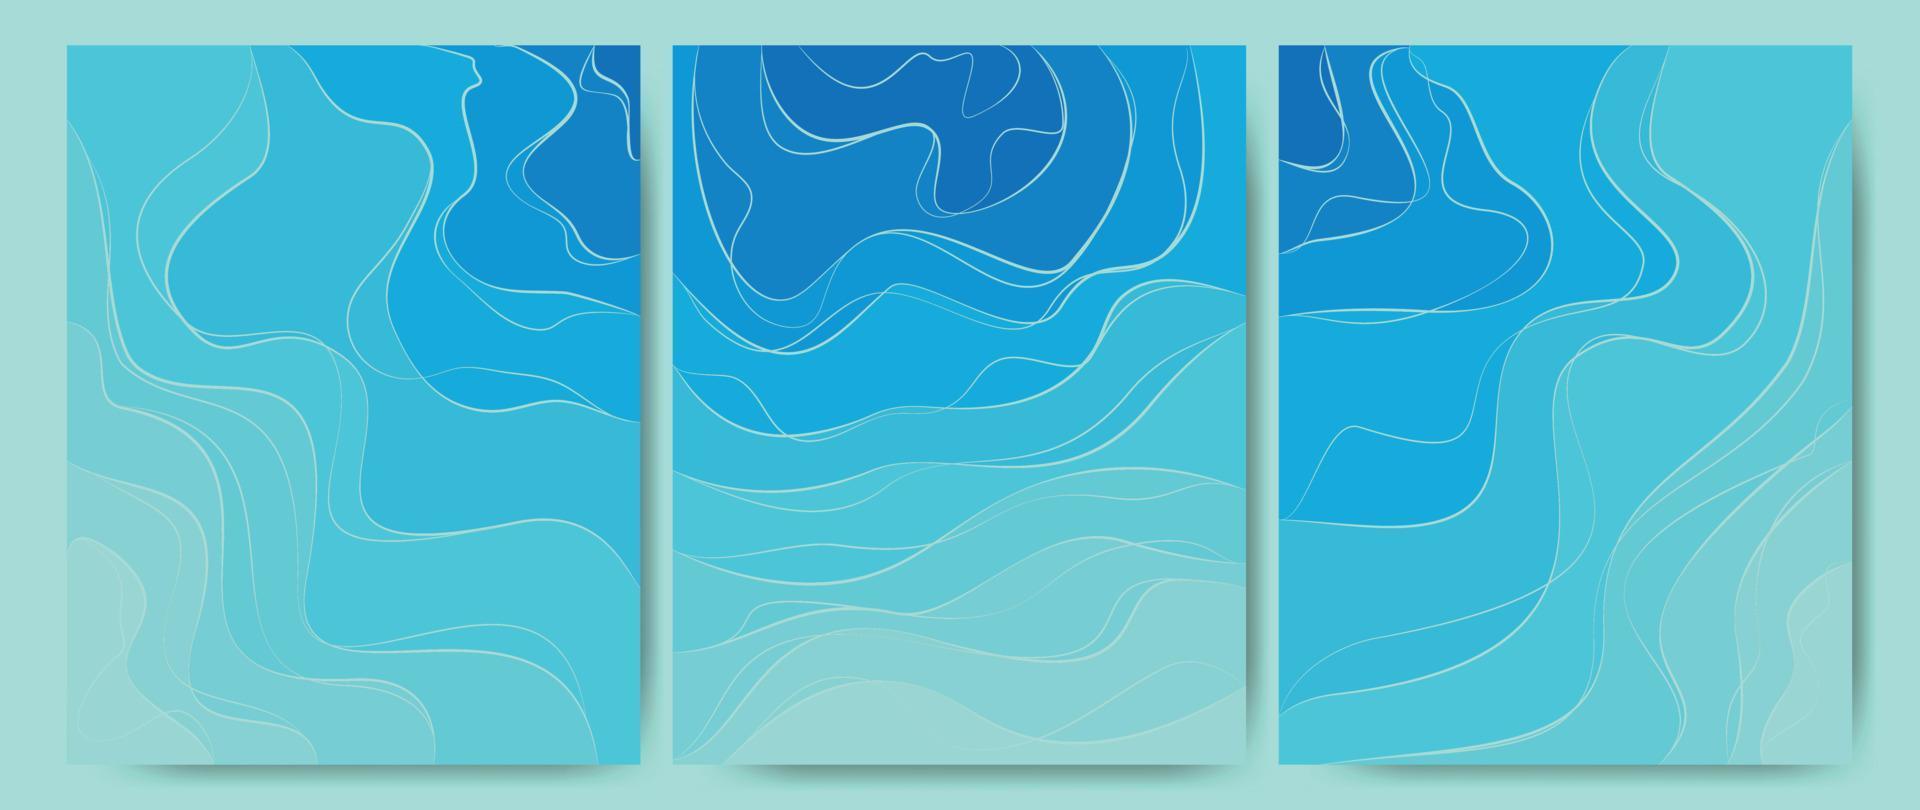 abstracte achtergrond van zee golven, oceaanwater, rivieren, meren. sjabloontextuur aqua met een patroon van golvende lijnen. geweldig voor covers, textiel prints stoffen, wallpapers. vectorillustratie. vector